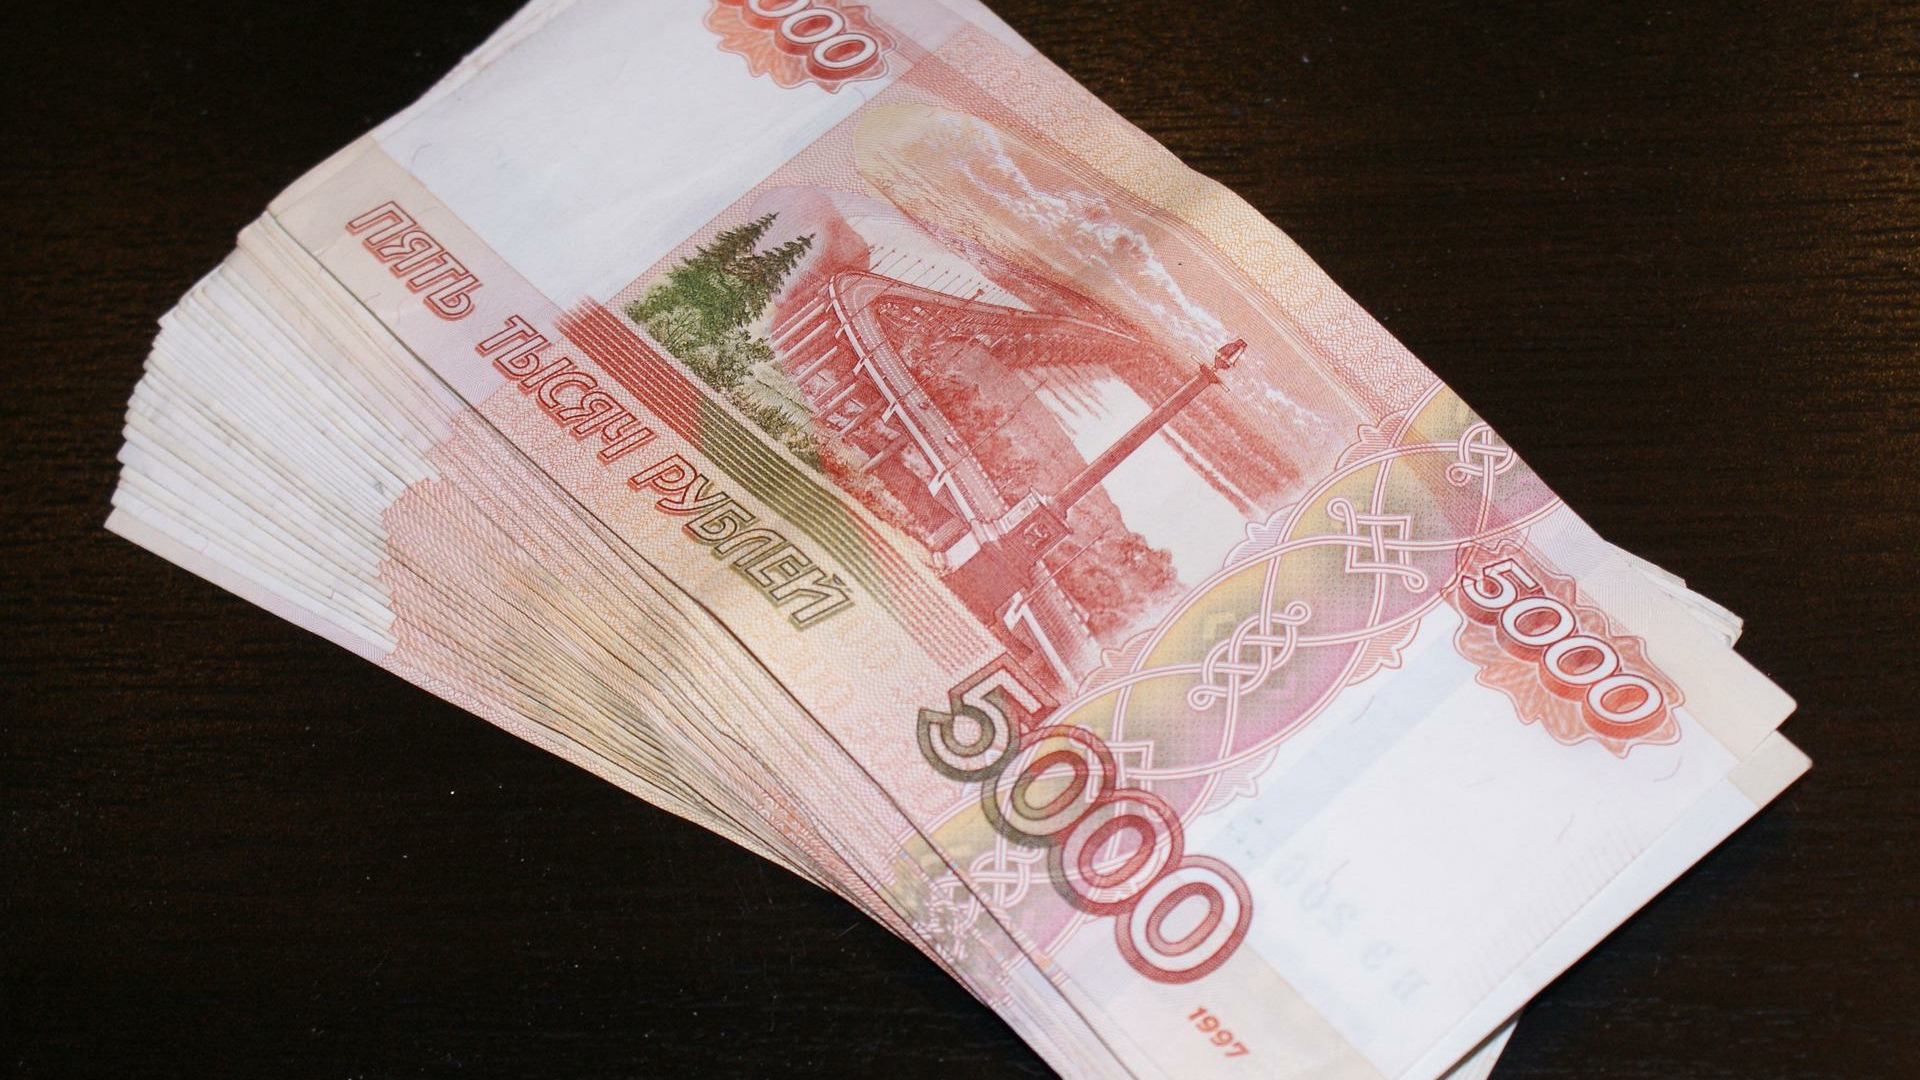 Около 8 трлн рублей из бюджета России уйдут на поддержку граждан и экономики